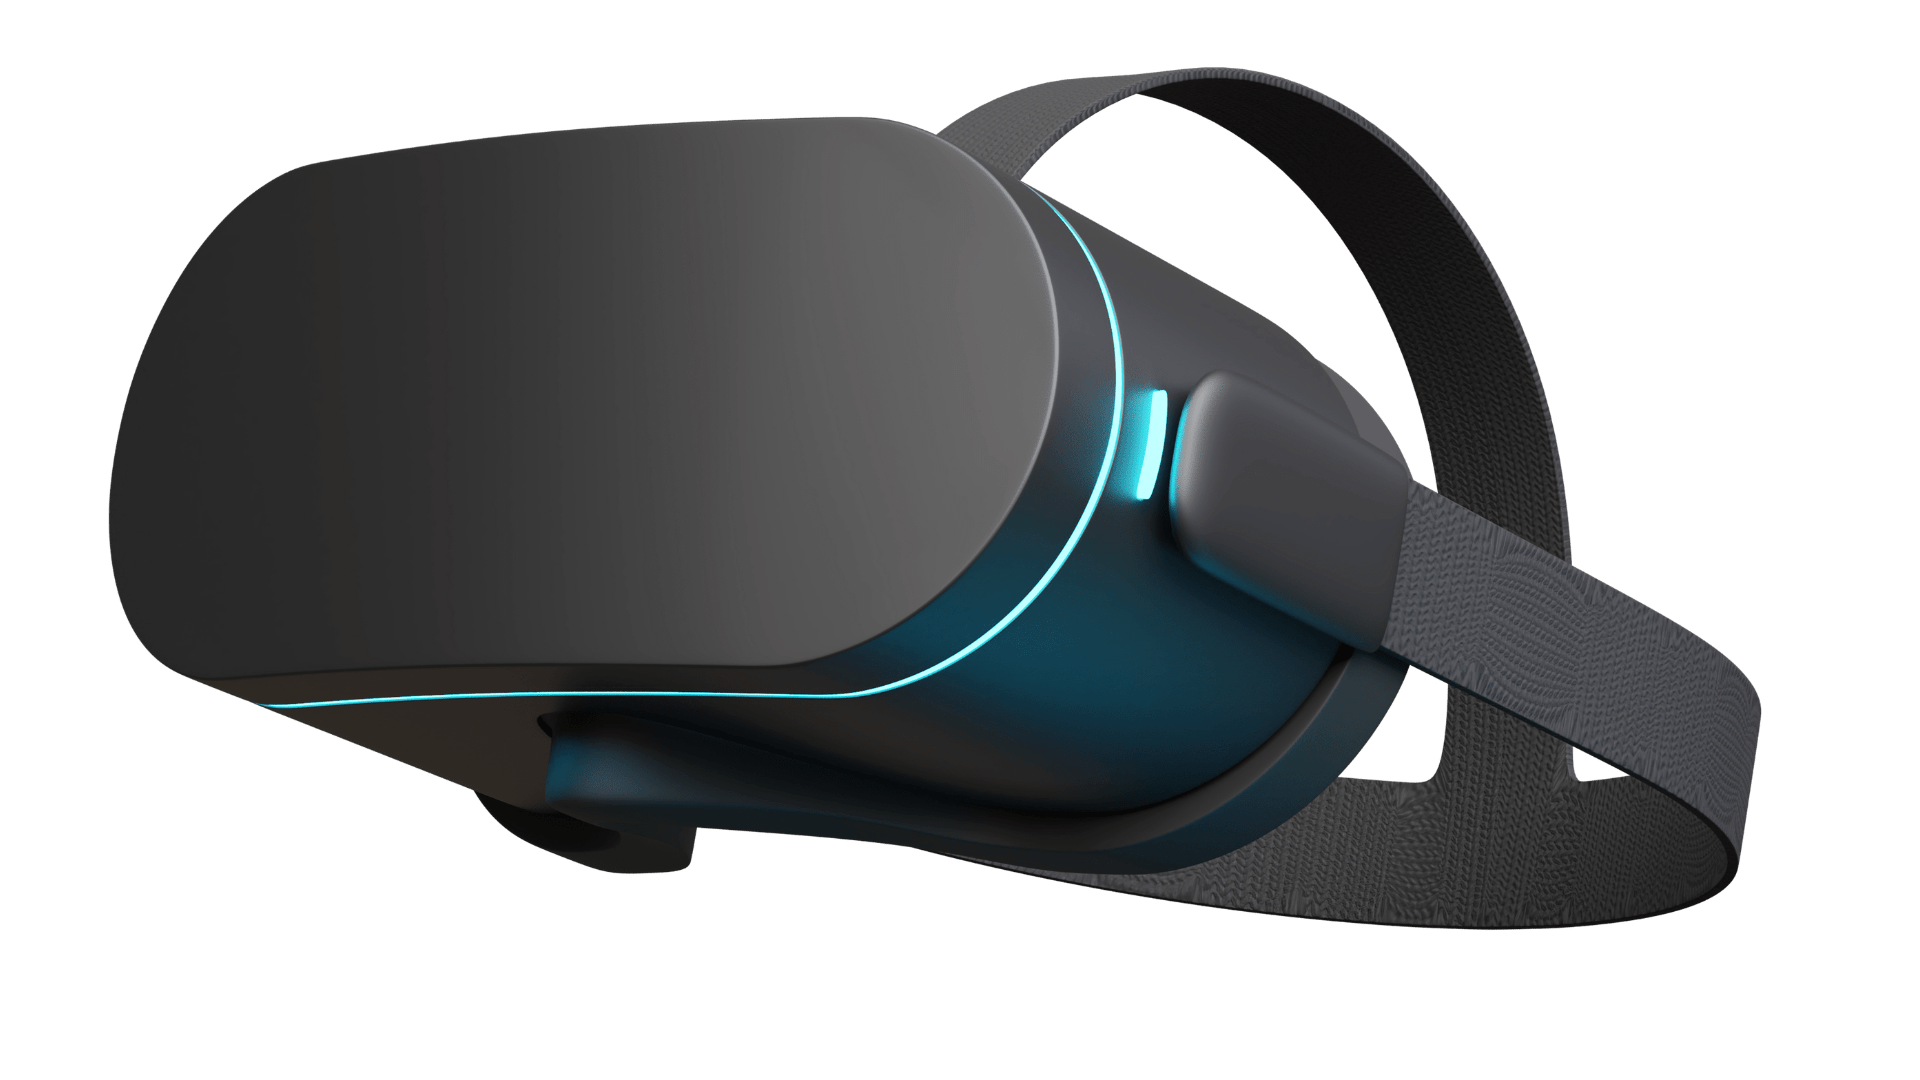 Comment fonctionne la technologie VR ?